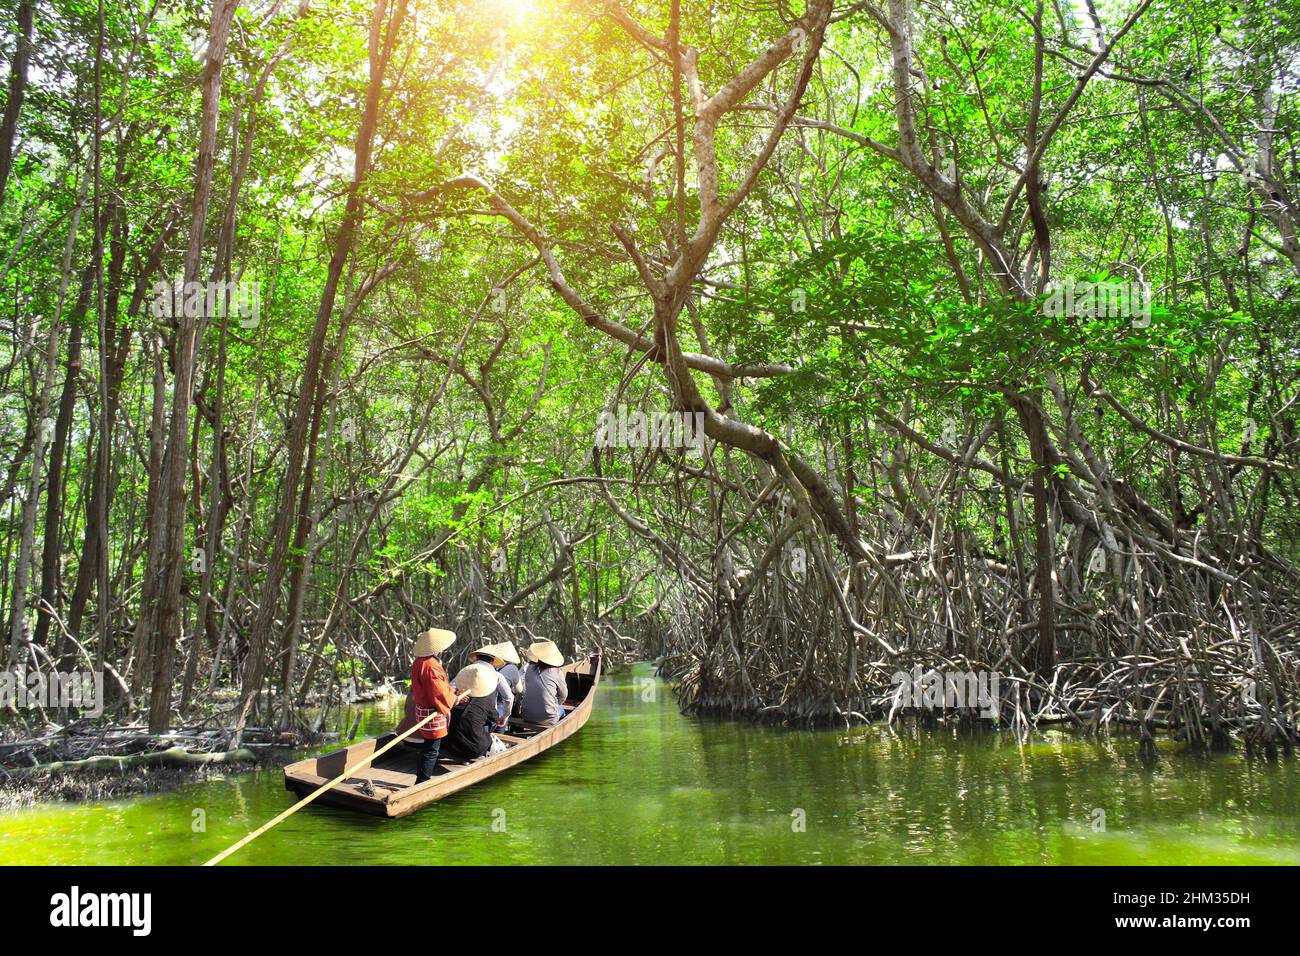 Persone in barca nella foresta di mangrovie, Asia. Un'attrazione turistica - giro in barca attraverso i canali di mangrovie Foto Stock